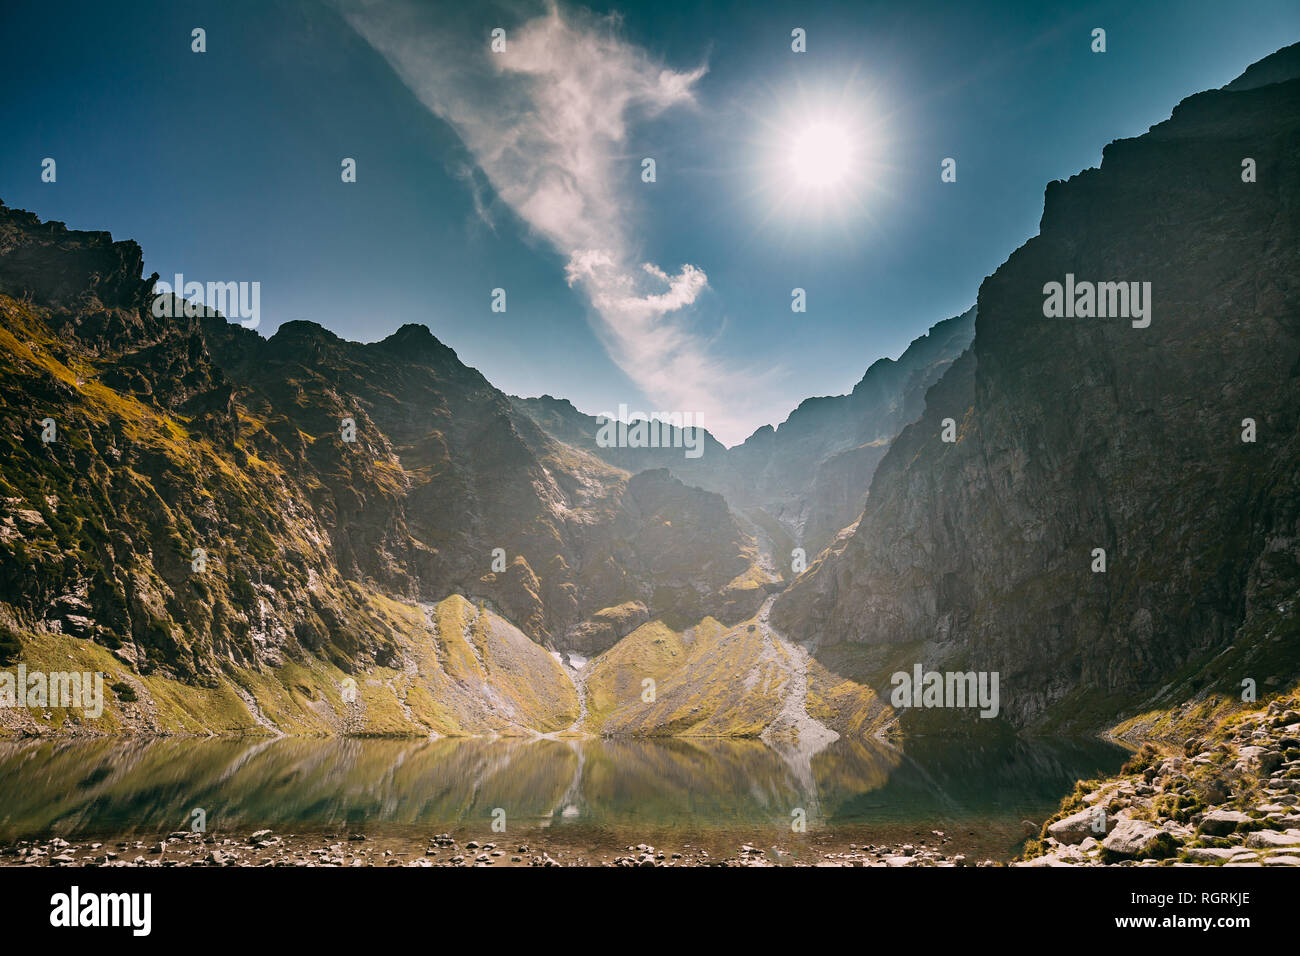 Parco nazionale dei Alti Tatra, Polonia. Lago calmo Czarny Staw sotto Rysy e Montagna estate paesaggio. Sole con raggi solari al di sopra di bellissima vista panoramica di Lak Foto Stock